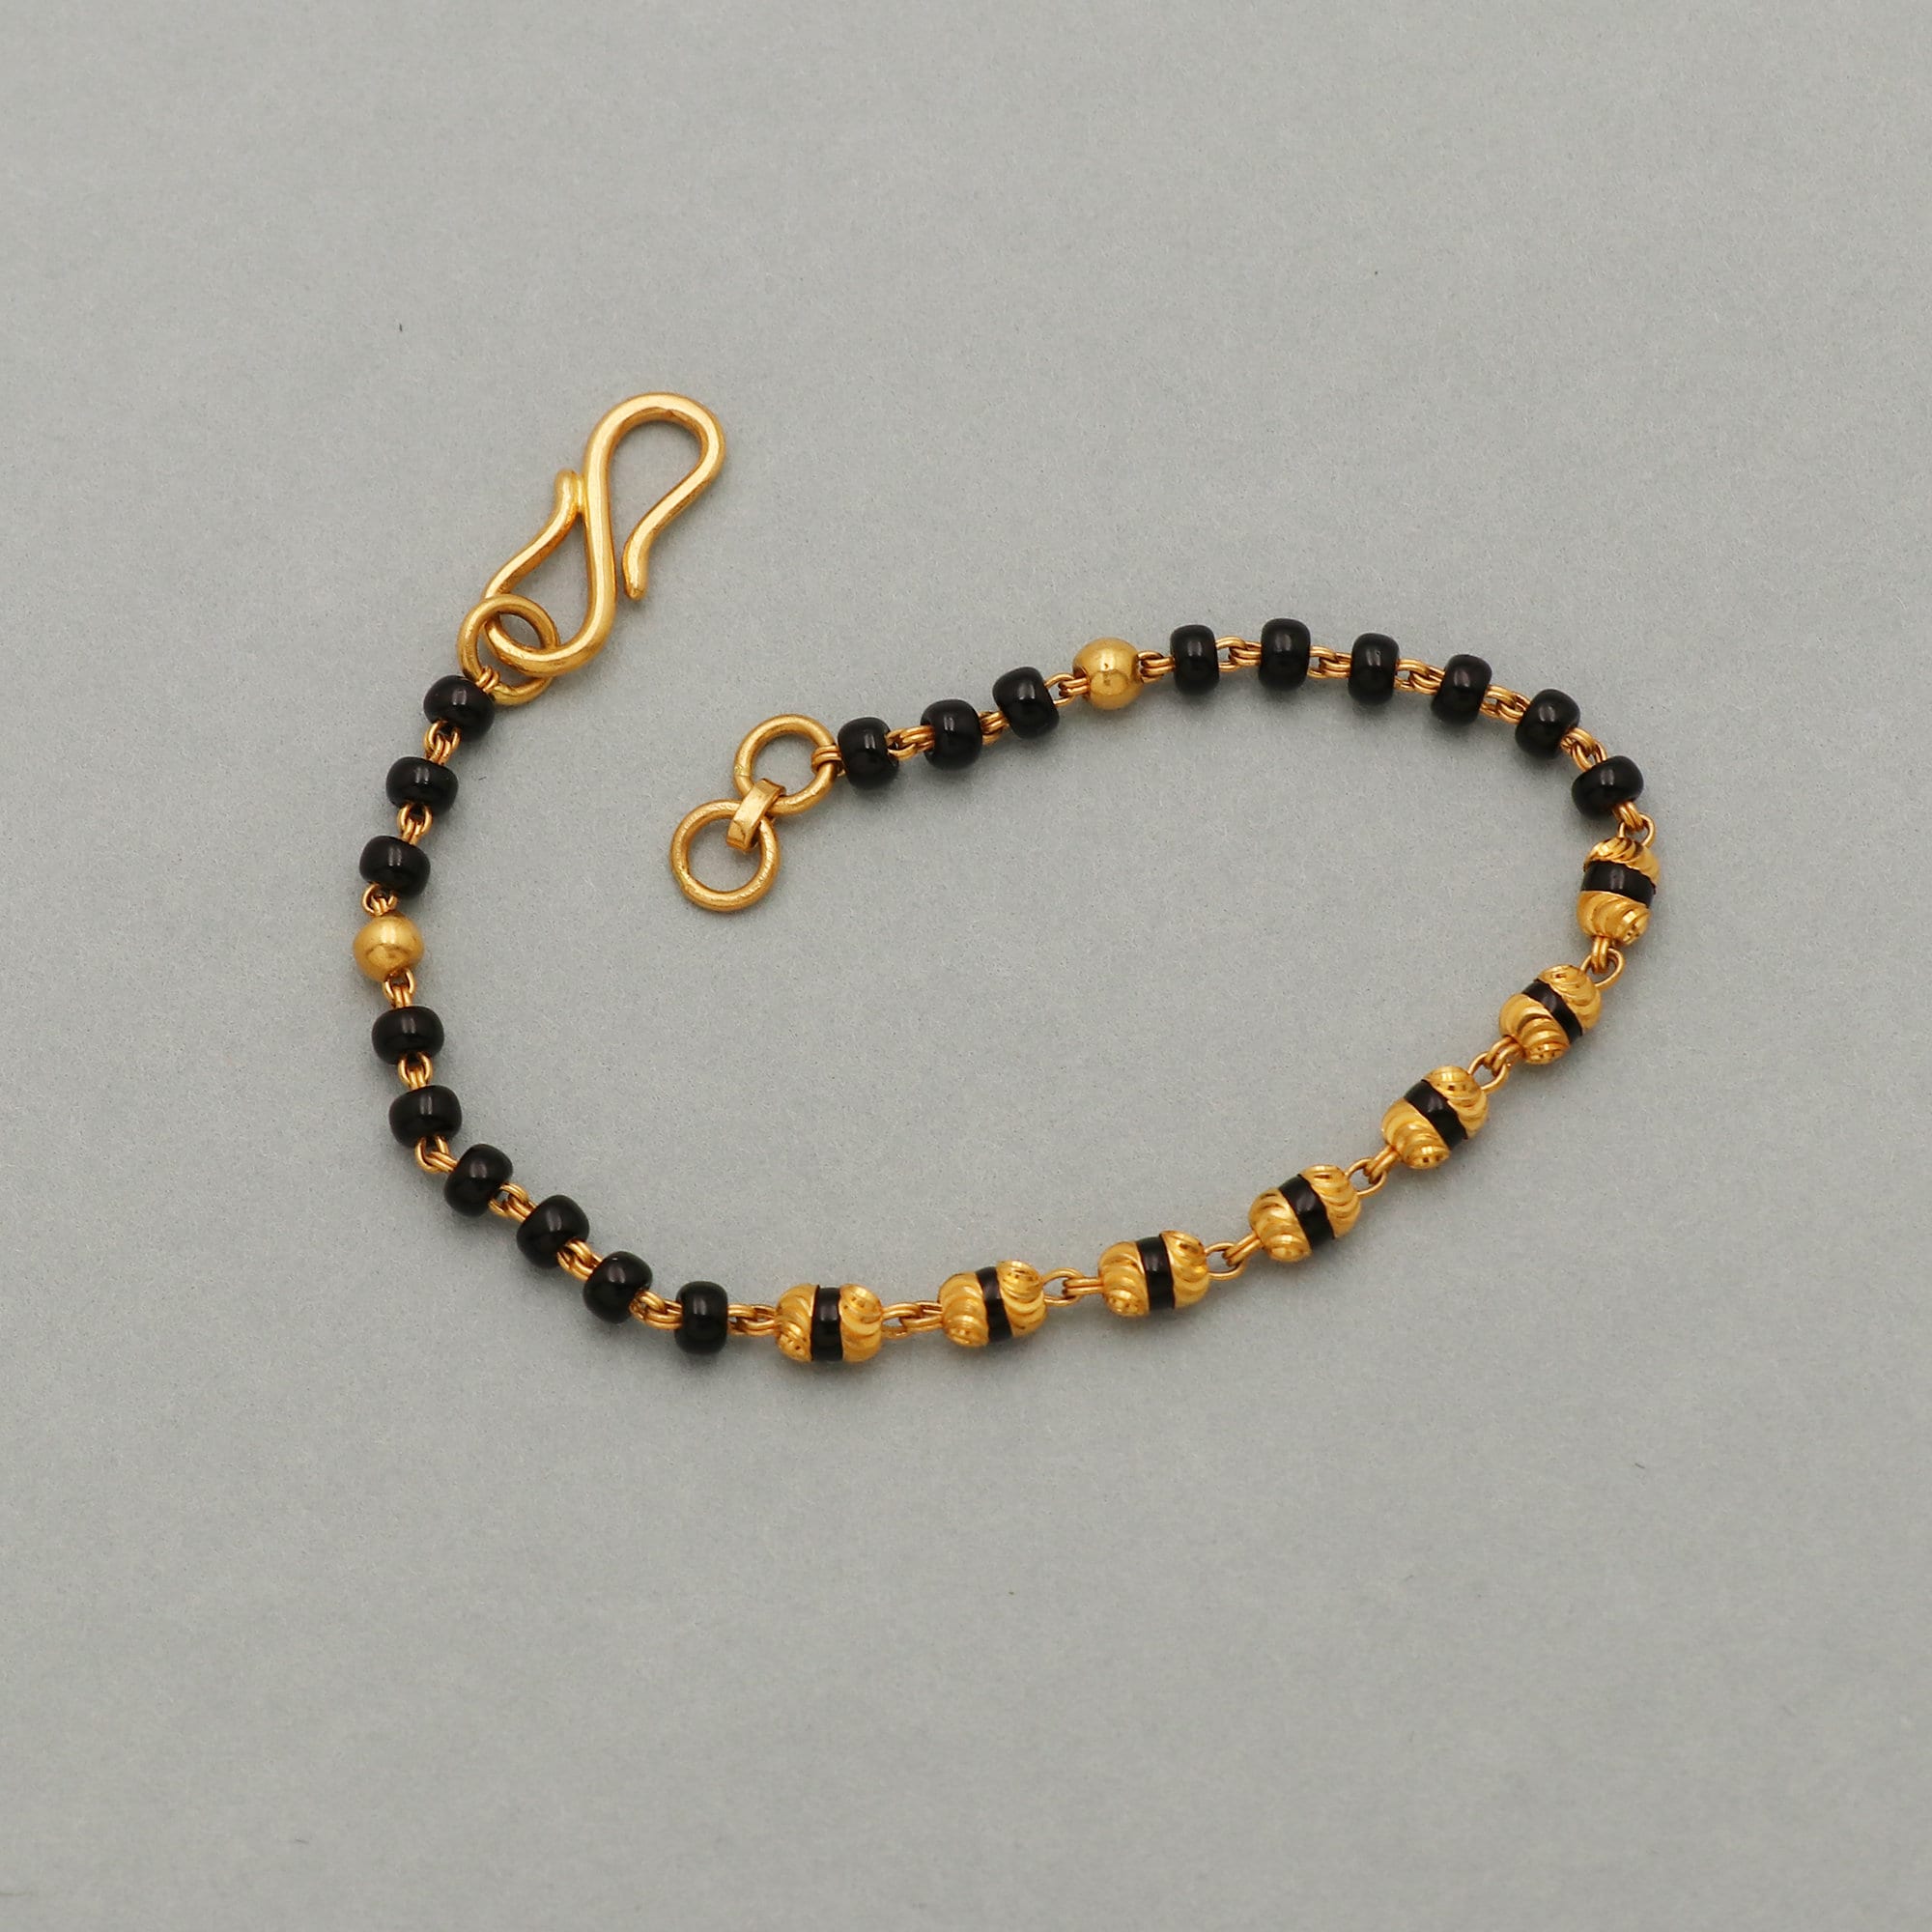 3mm Black Onyx Bead Bracelet with Diamond Bead - Zoe Lev Jewelry